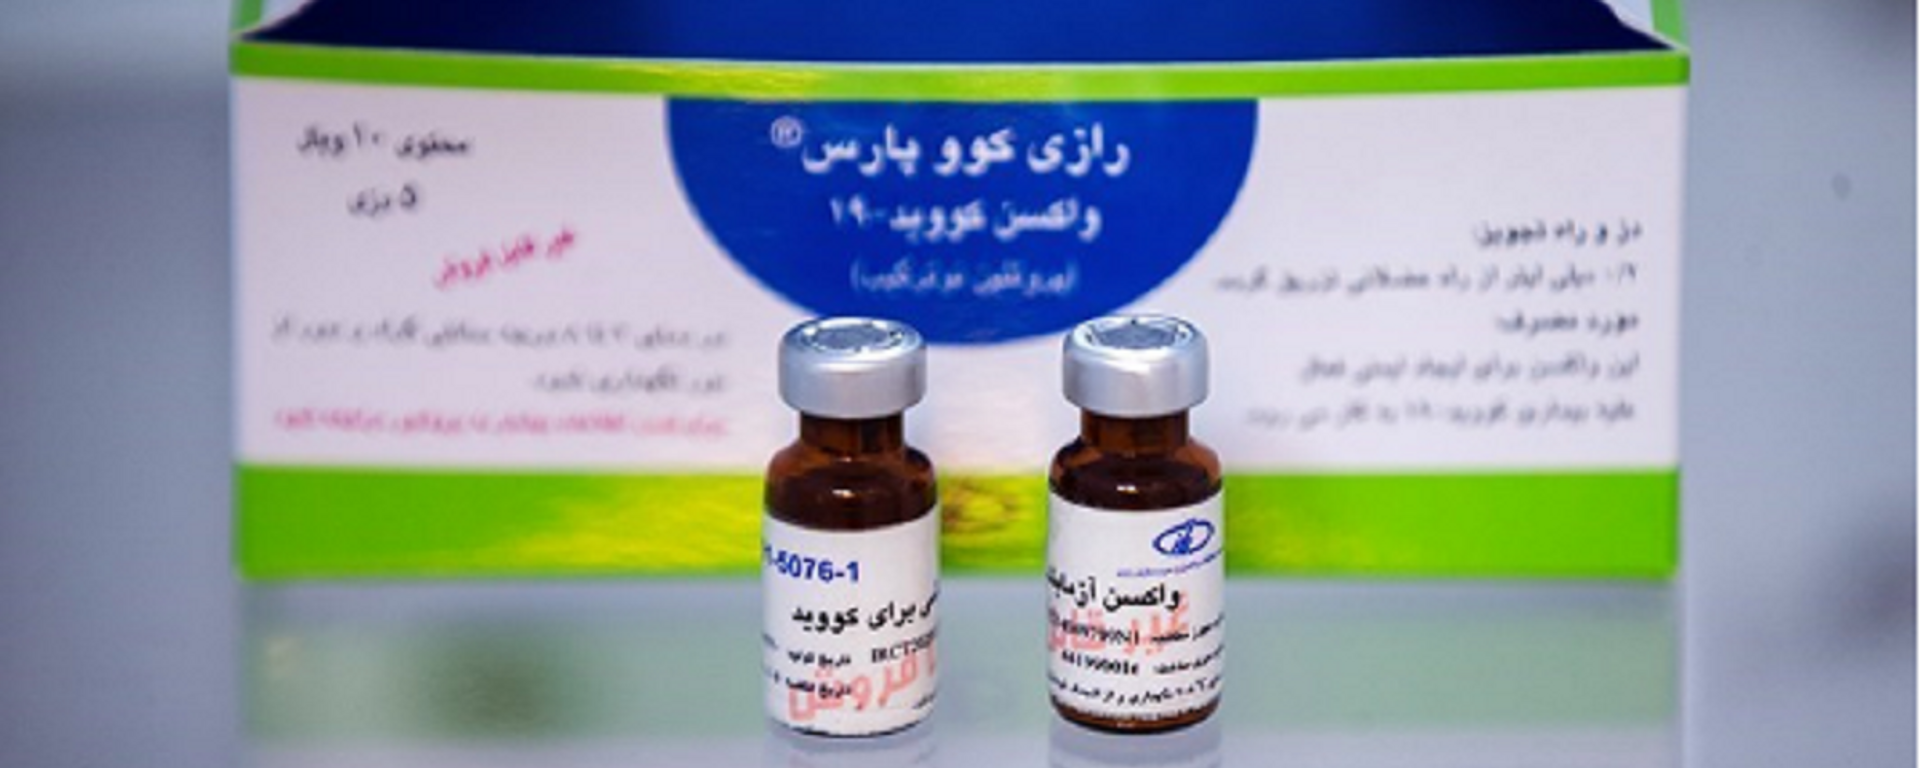 واکسن ایرانی کوو پارس علیه کرونا - اسپوتنیک ایران  , 1920, 23.03.2021